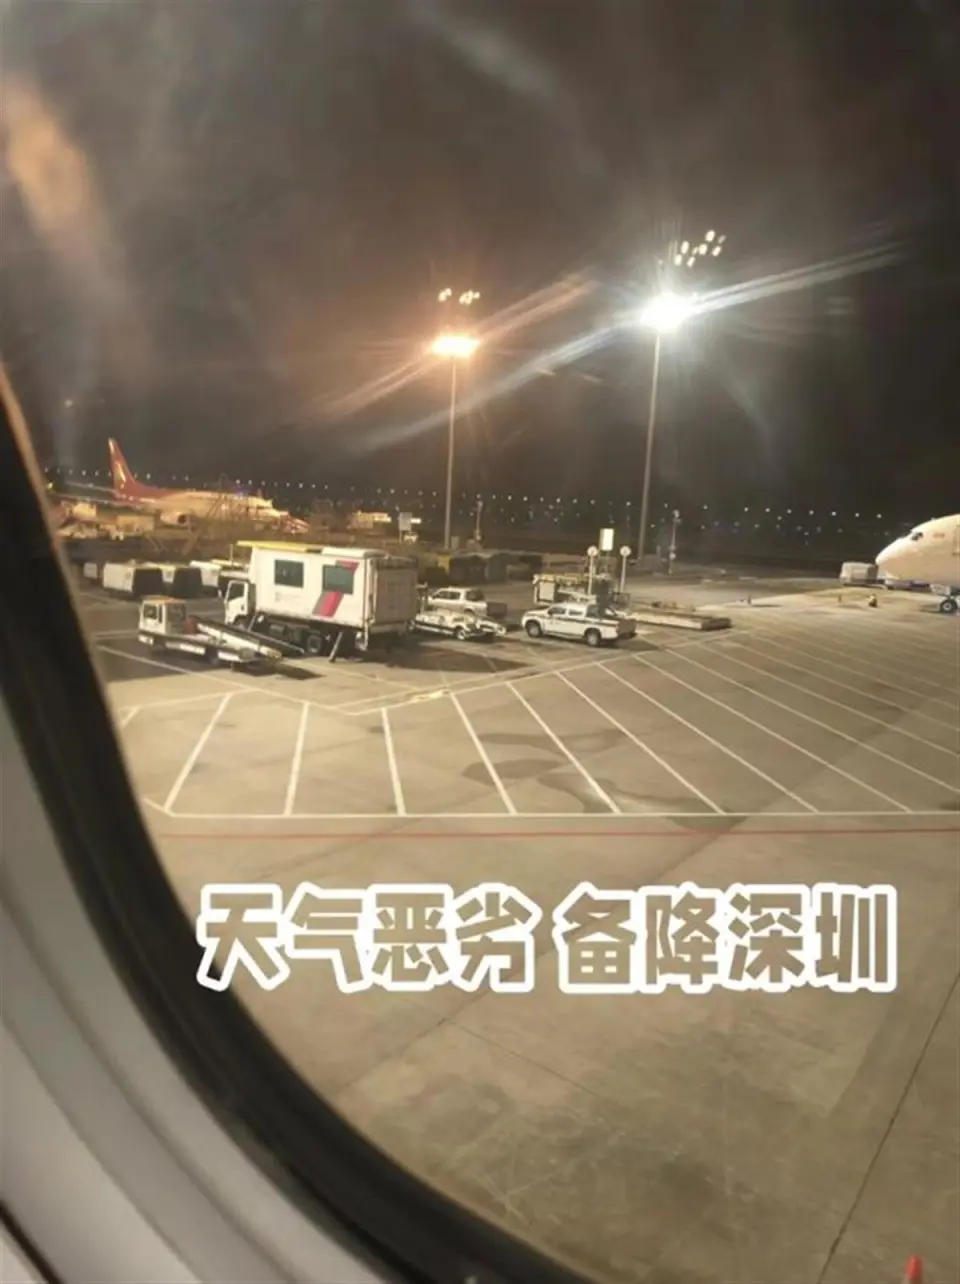 上海飞香港一航班两次降落失败  不少乘客呕吐了